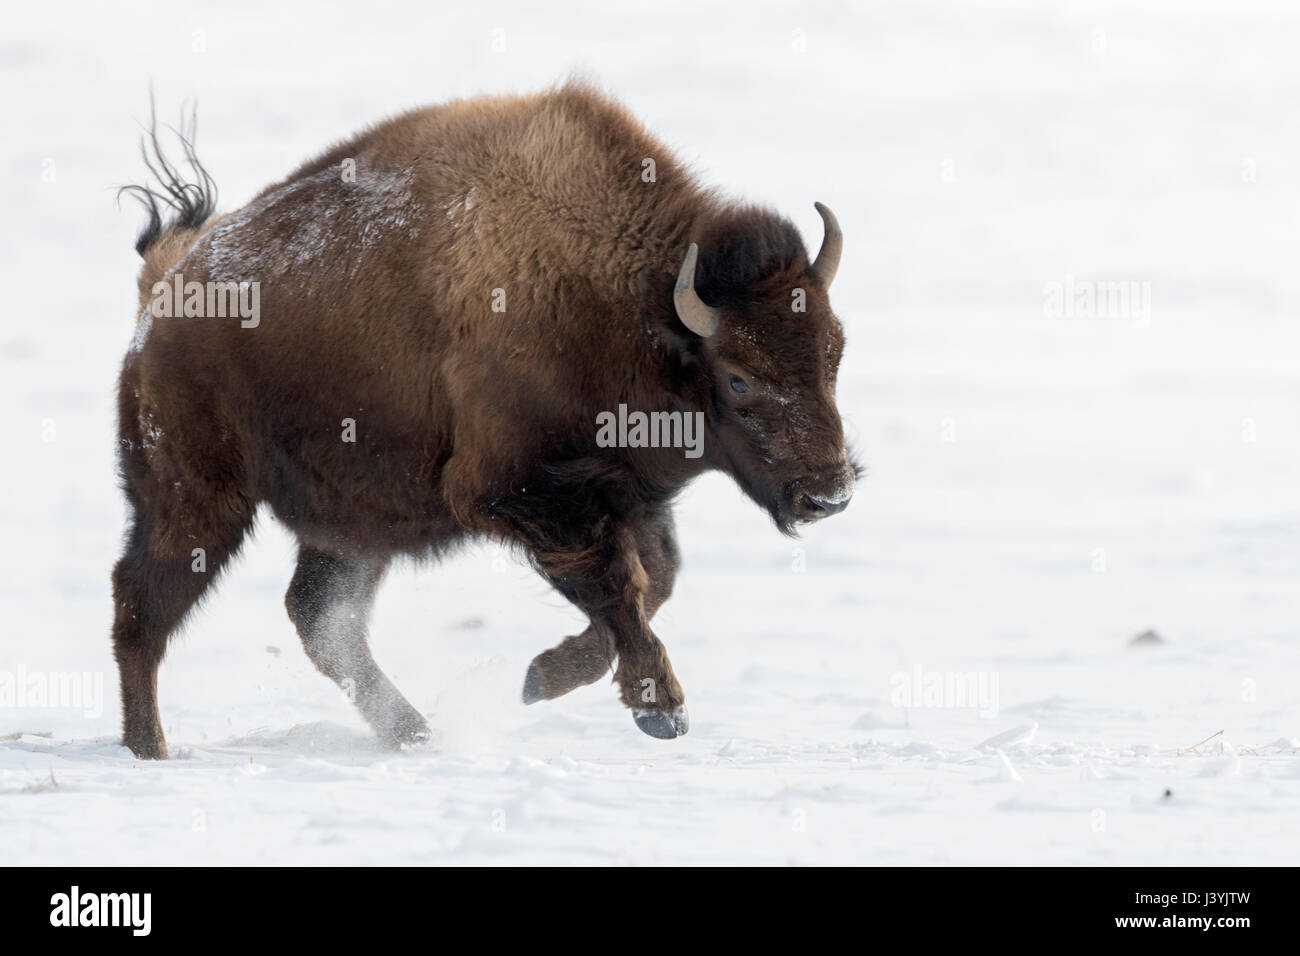 Bison d'Amérique ( Bison bison ) en hiver, la course, galopping, sautant au dessus des plaines couvertes de neige, plein de joie, le parc national de Yellowstone Parl, Montana, USA. Banque D'Images